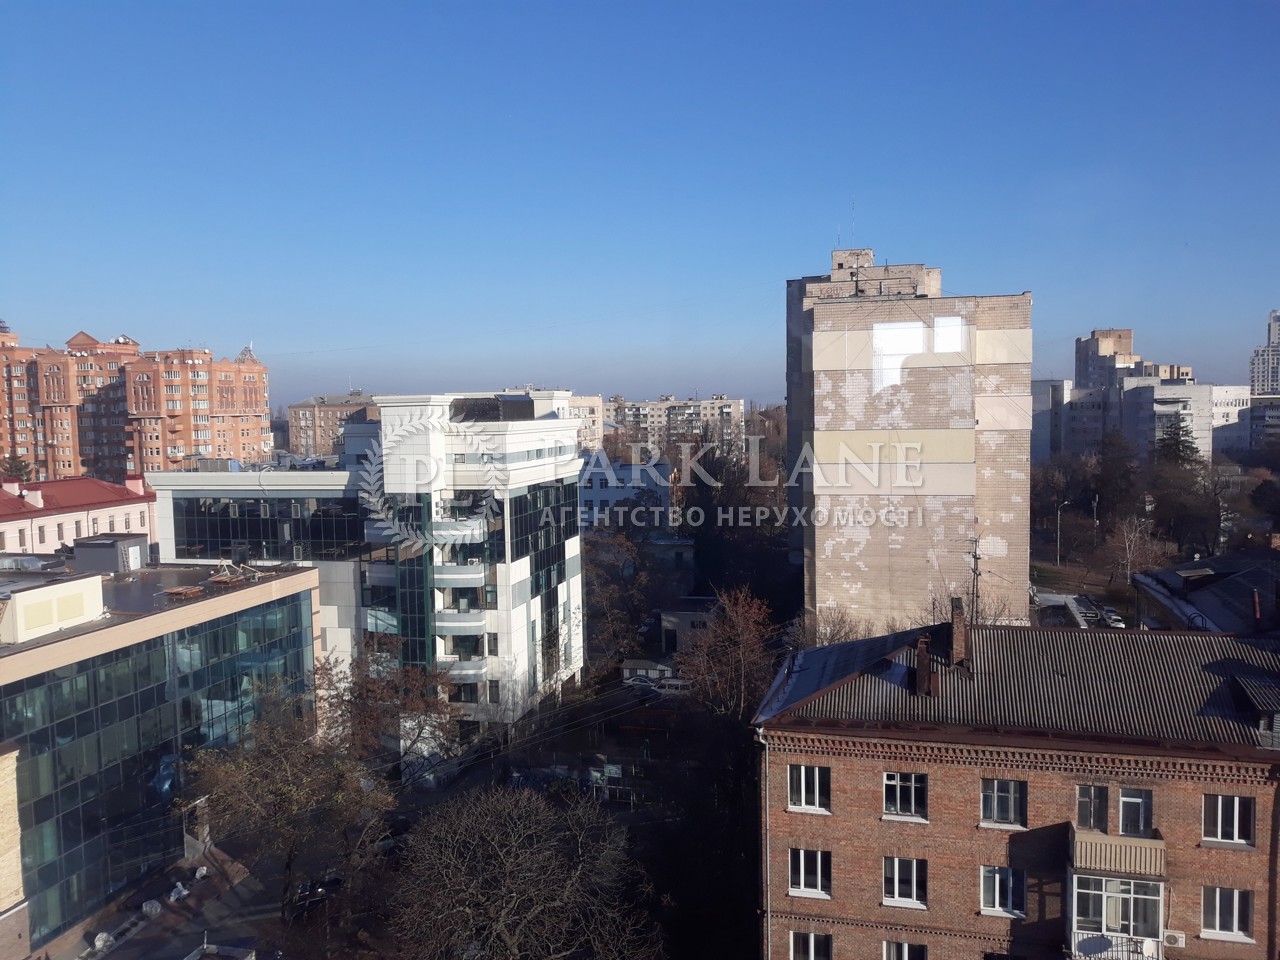  Офис, ул. Деревлянская (Якира), Киев, G-763380 - Фото 8